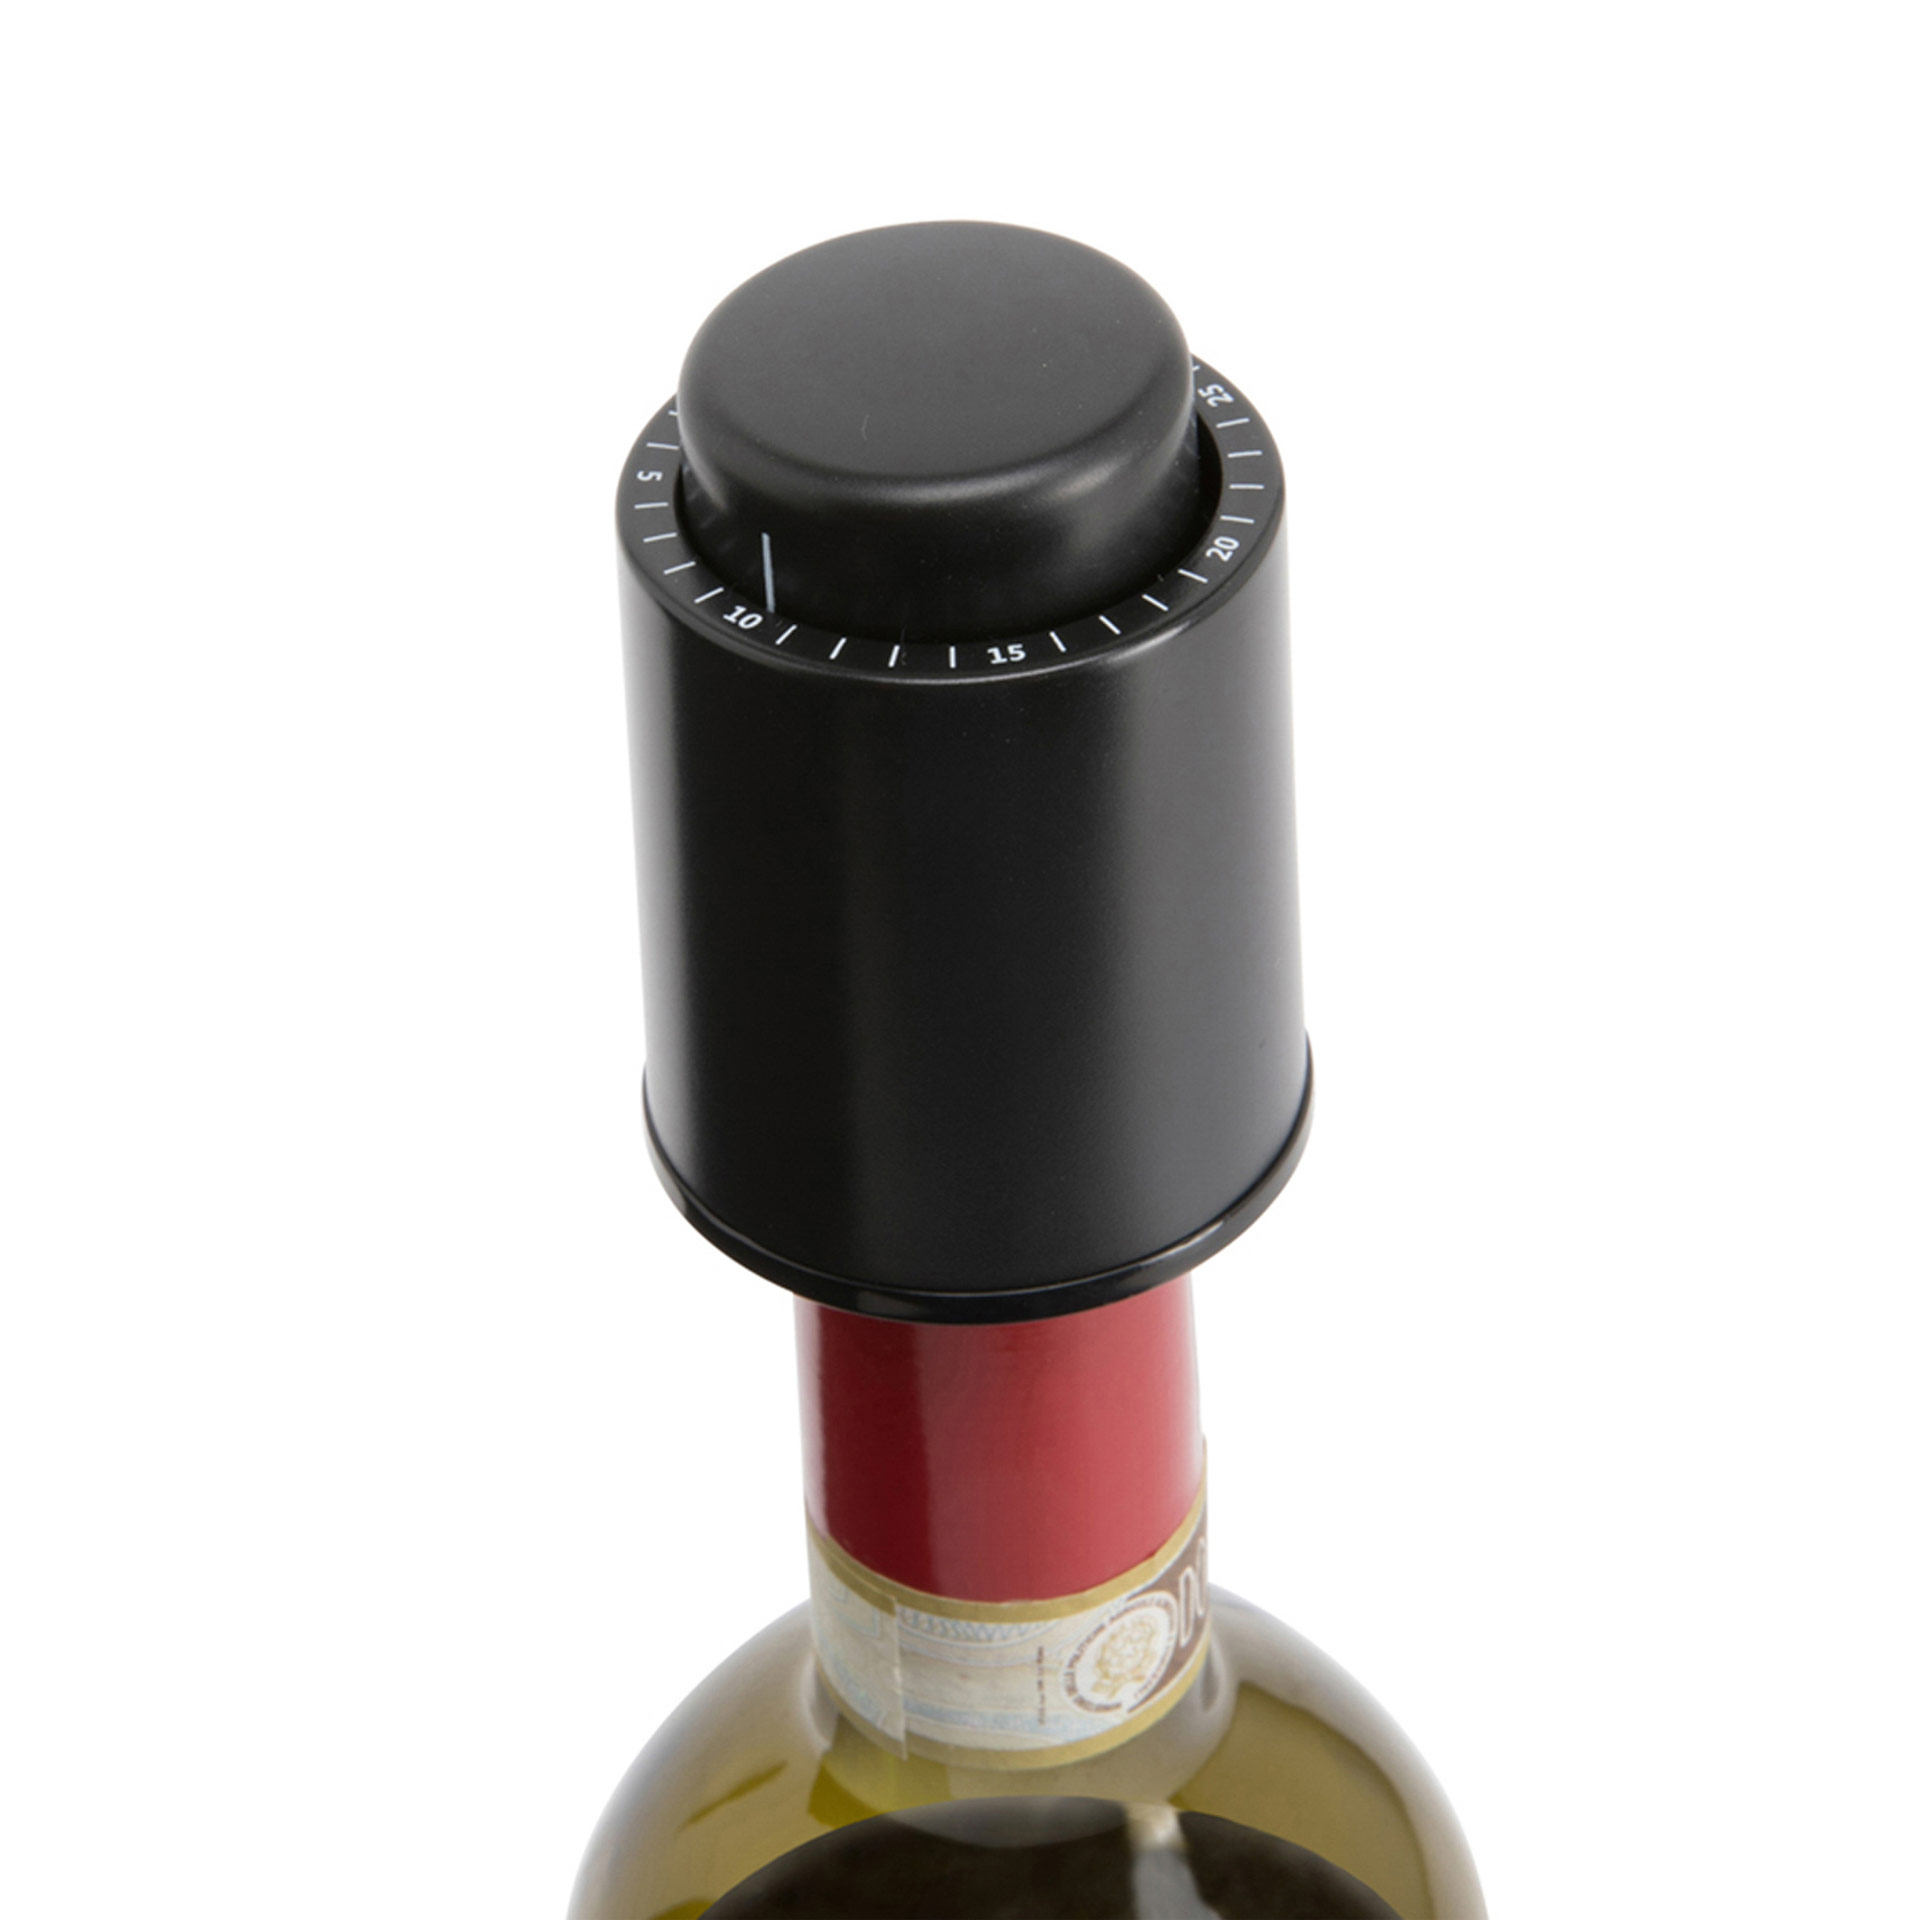 JHOOOD Tappo per Bottiglia di Vino in Acciaio Inossidabile Tappo Bottiglia Vino Sottovuoto Riutilizzabili Salva Tappo Bottiglia di Vino Riutilizzabile Mantiene Il Vino Fresco Argento Impermeabile 